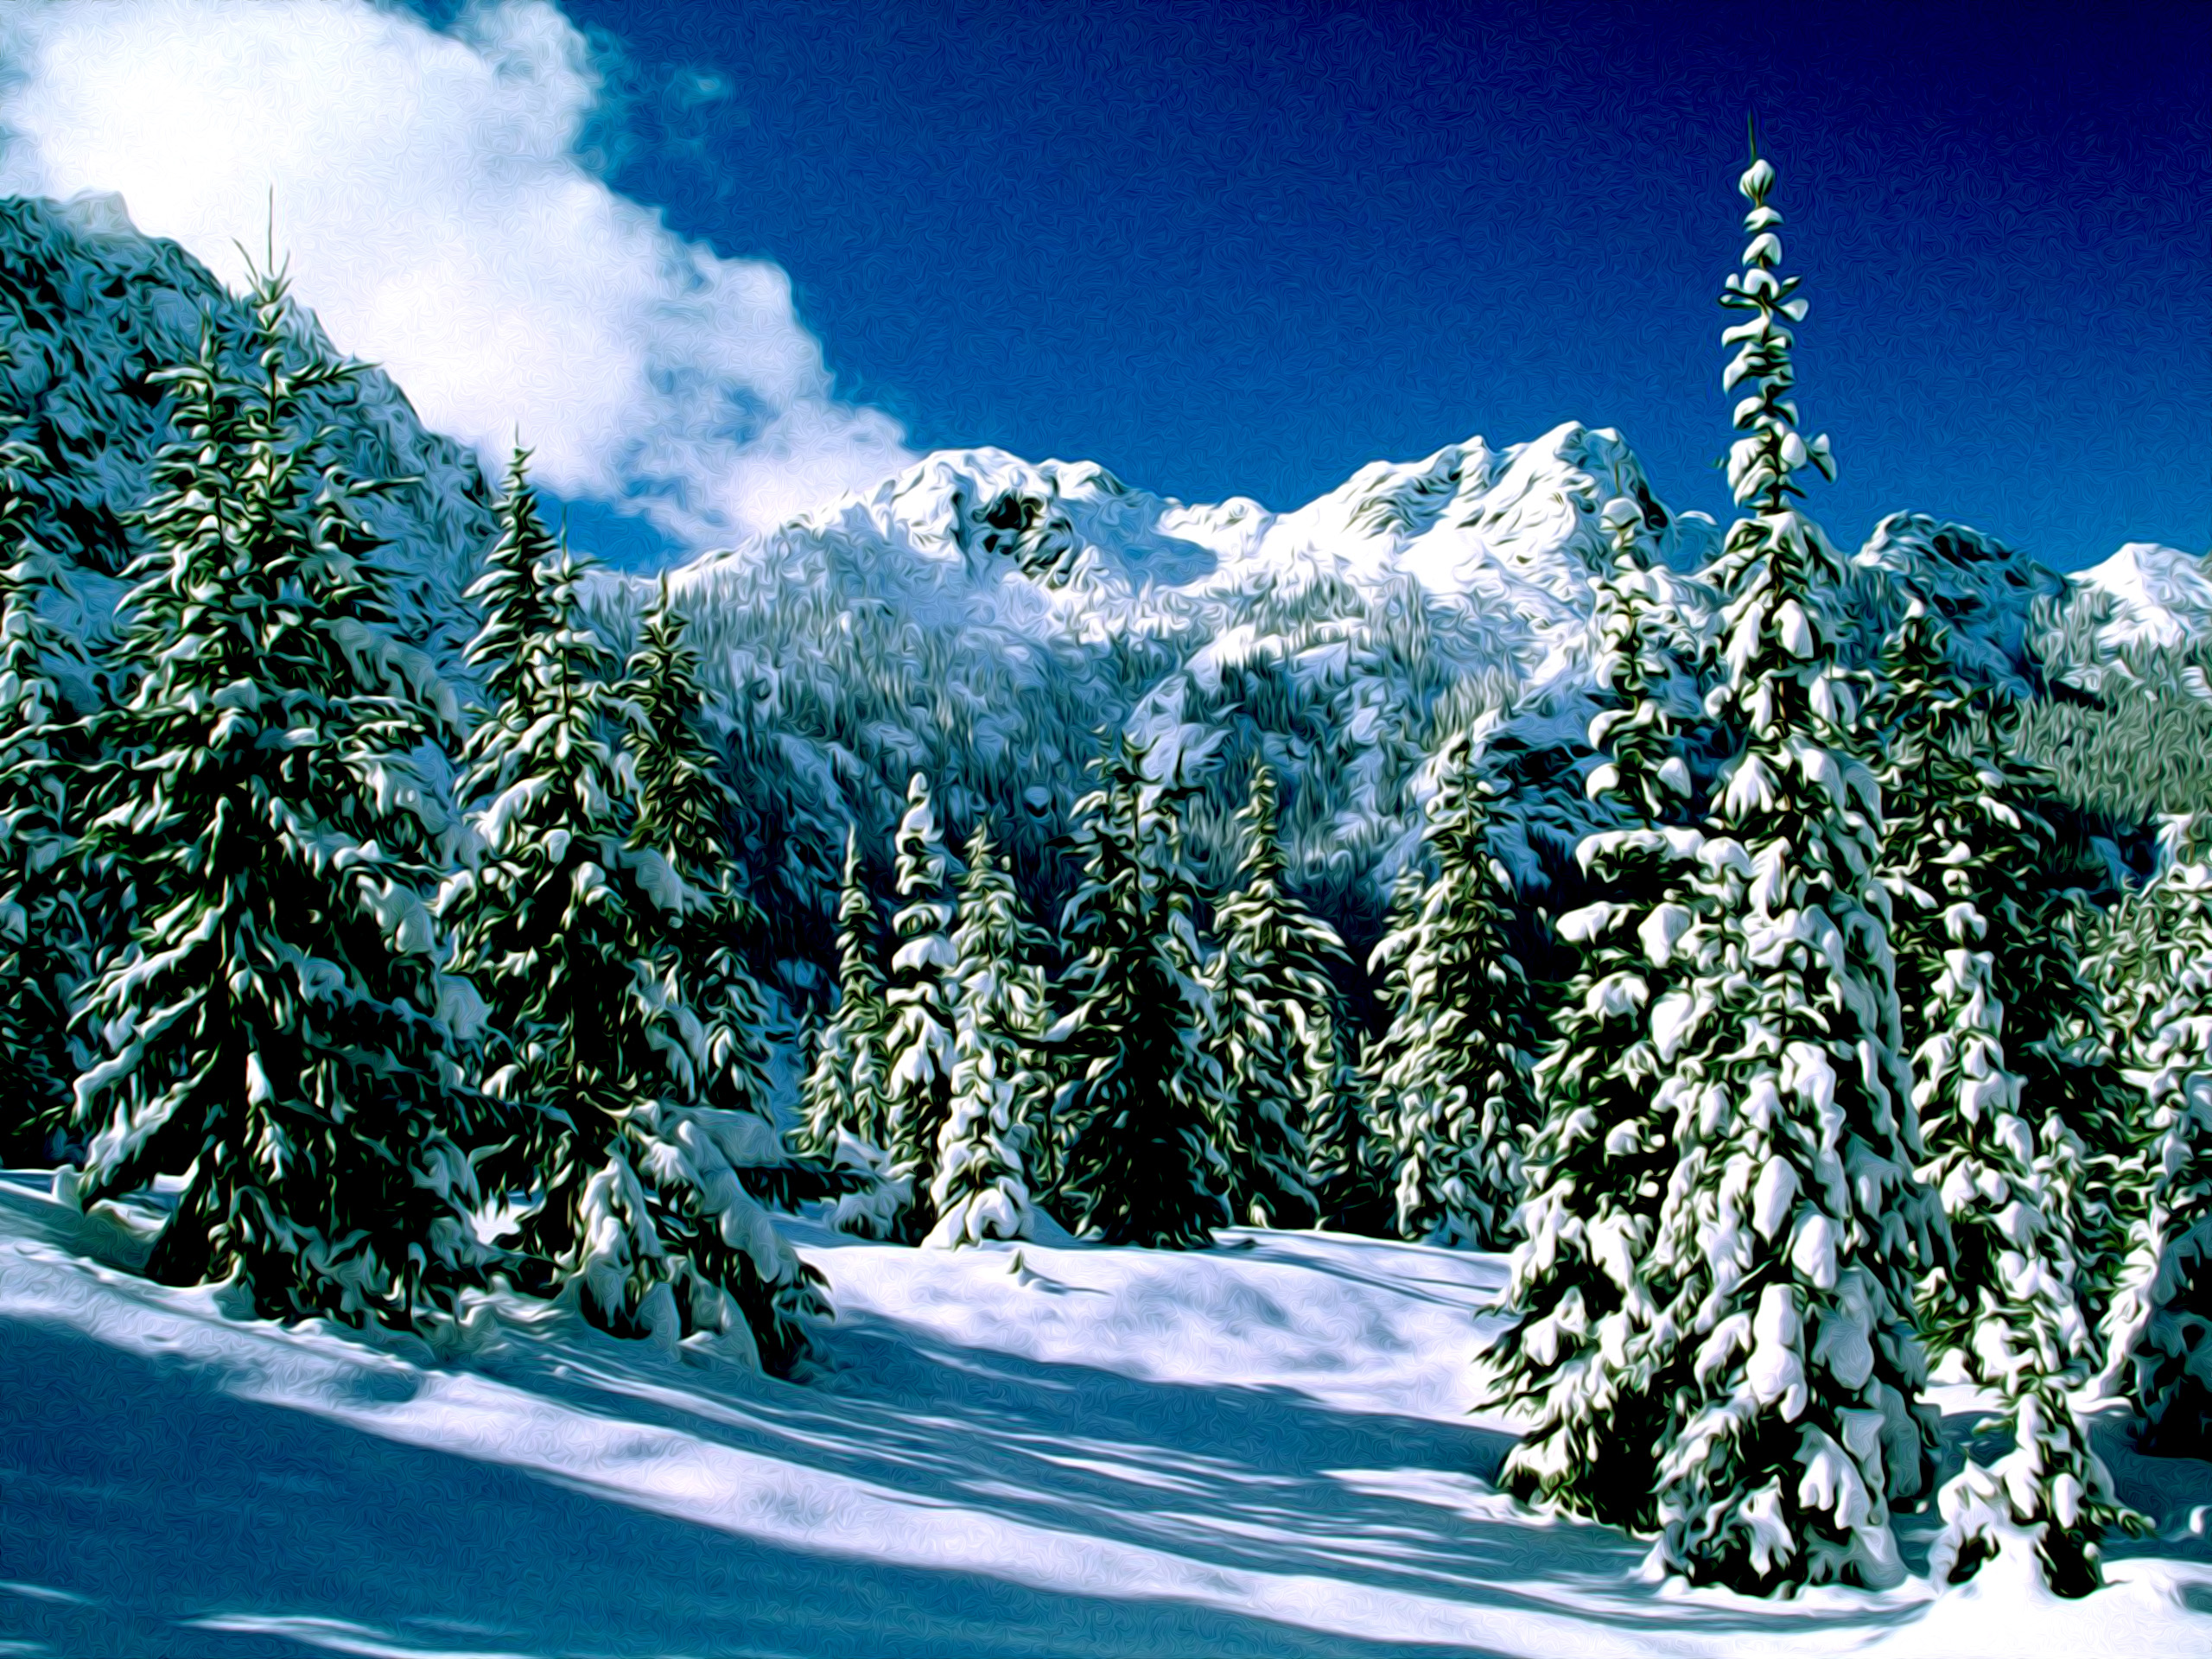 Winter Nature Snow Scene Desktop Wallpaper For